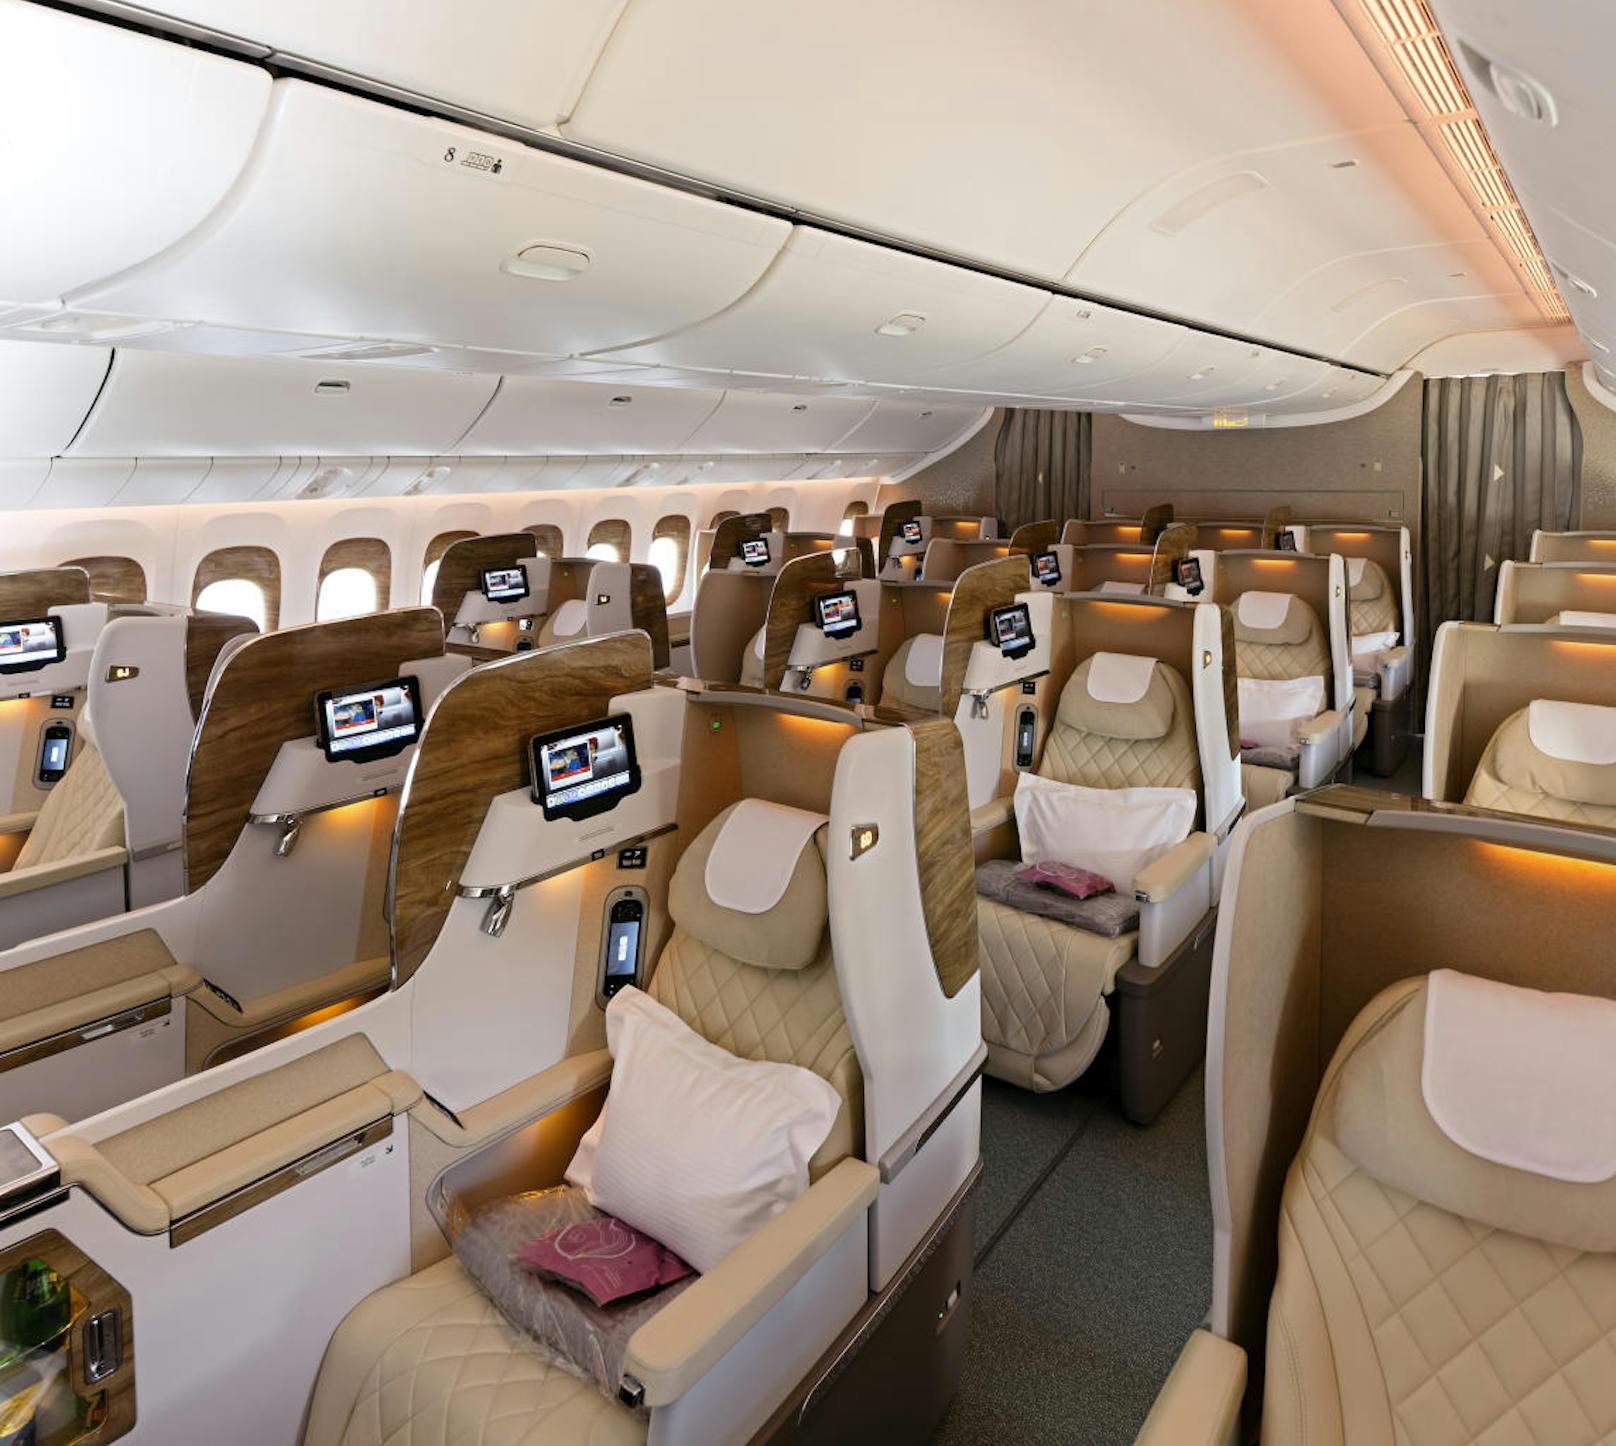 Die neue Emirates Business Class wurde mit völlig neu gestalteten Sitze, die sich mittels Steuerung über den Touchscreen in ein flaches Bett verwandeln lassen, ausgestattet.